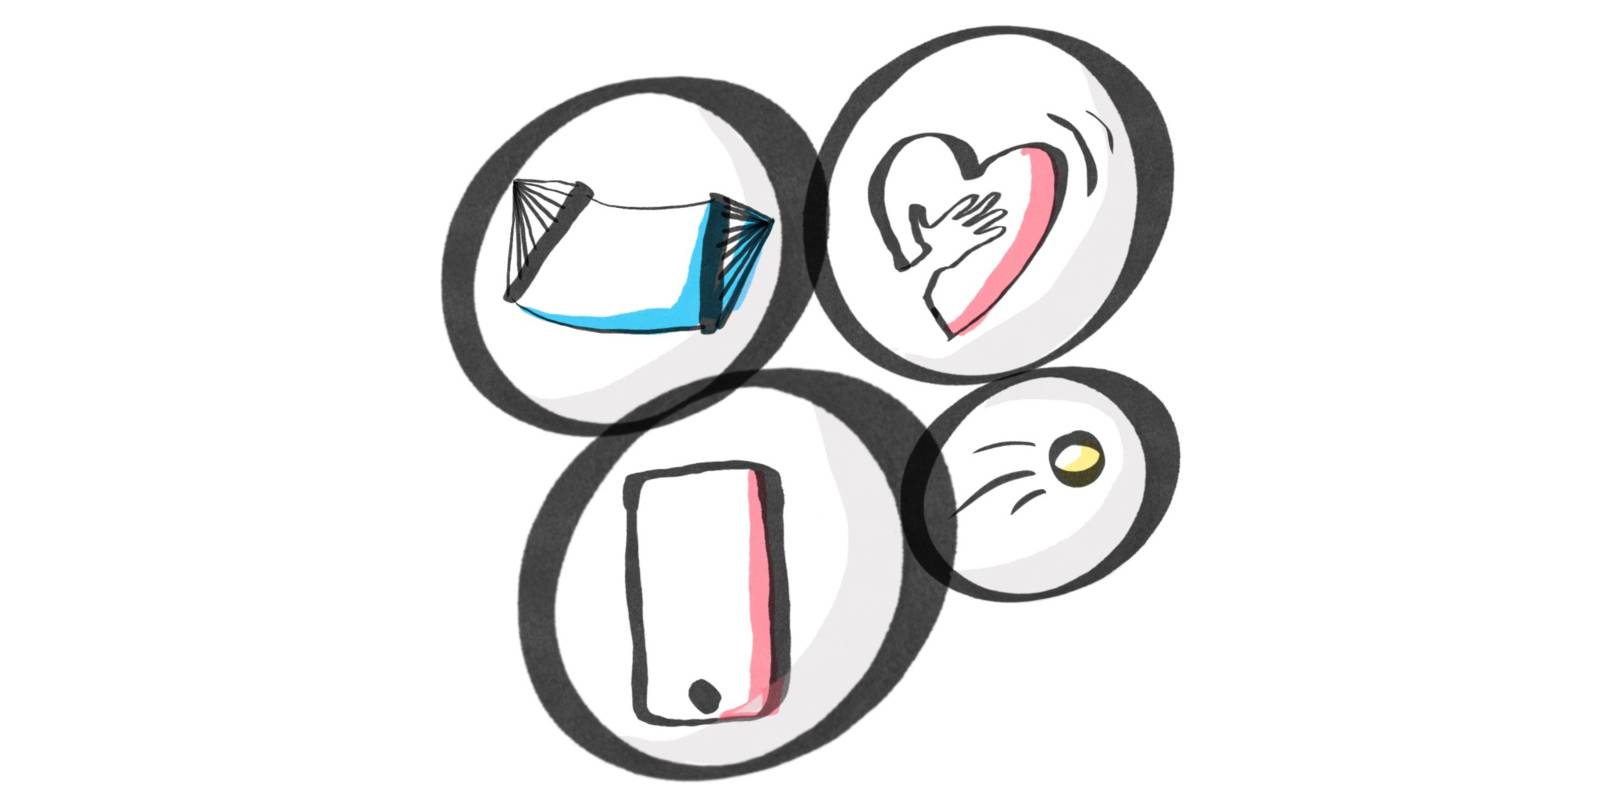 Zeichnung: Vier schwarze Ringe unterschiedlicher Größe (zwei nebeneinander und darunter noch einmal zwei) überlappen sich leicht. Darin ist jeweils ein Symbol: Hängematte, Herz, Smartphone, Auge.